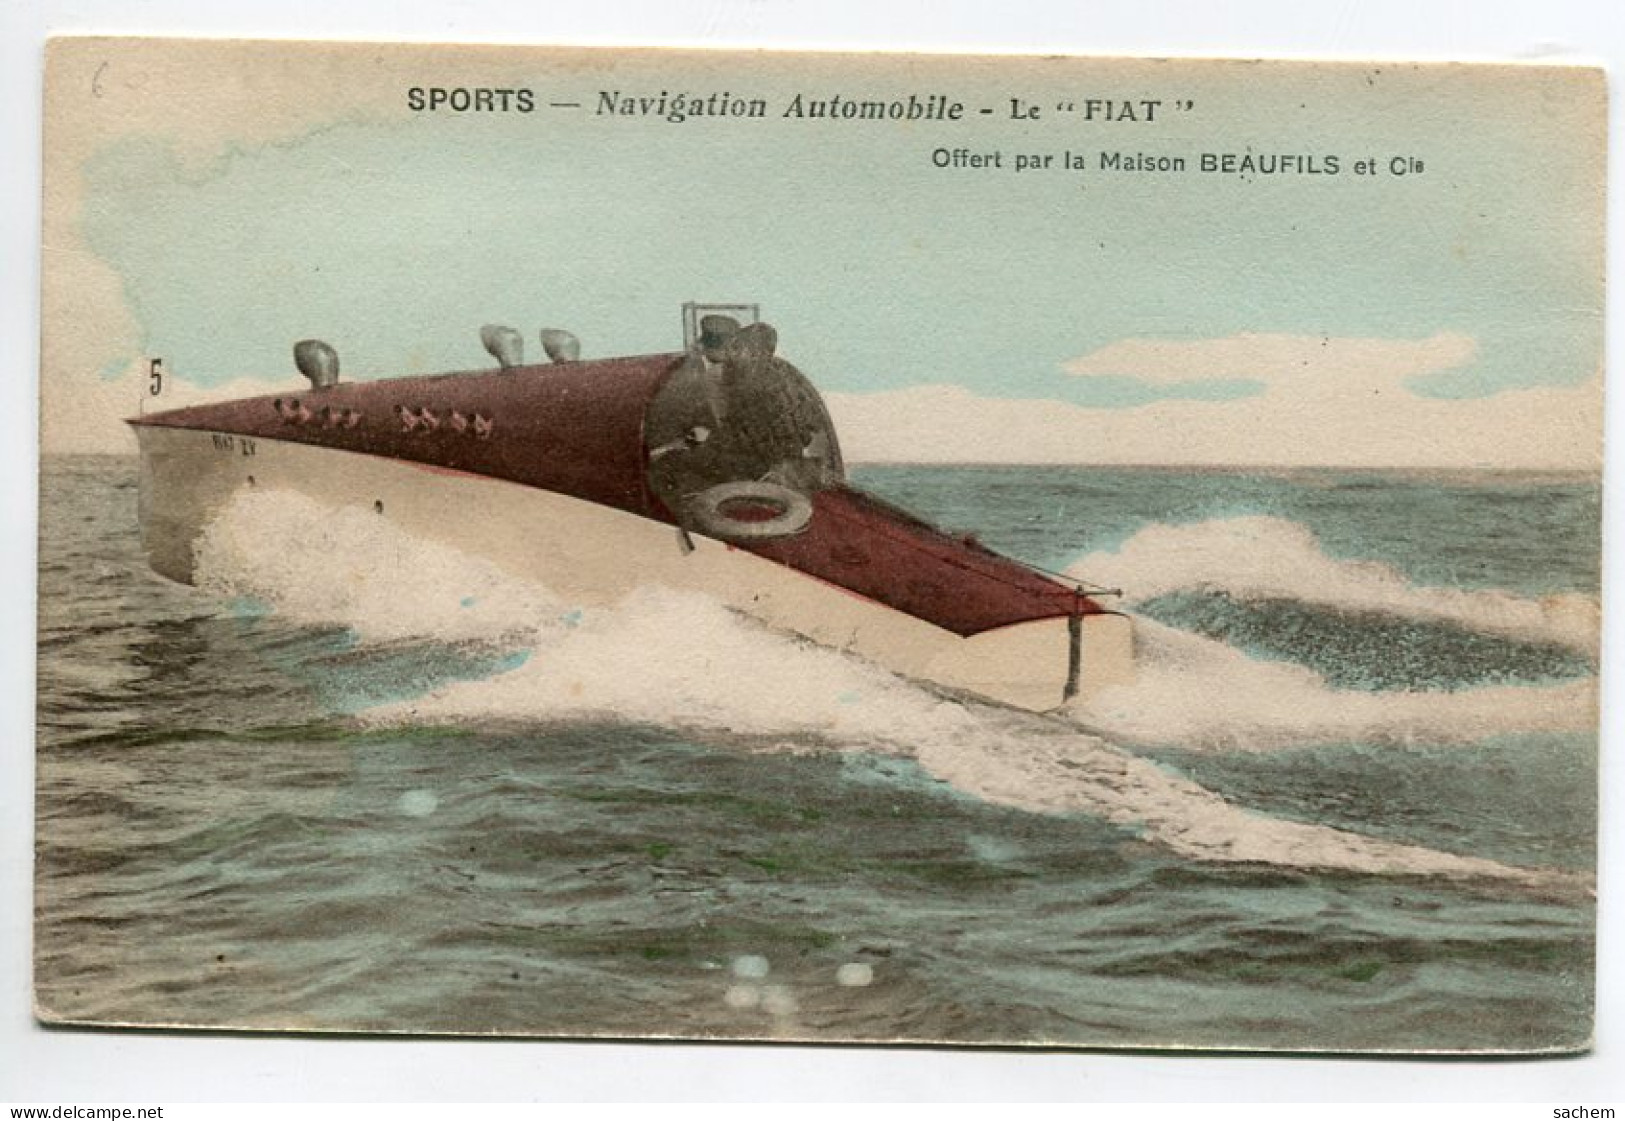 NAUTISME Navigation Automobile Le FIAT Canot De Course Couleur 1910   Sports  D19 2022  - Water-skiing